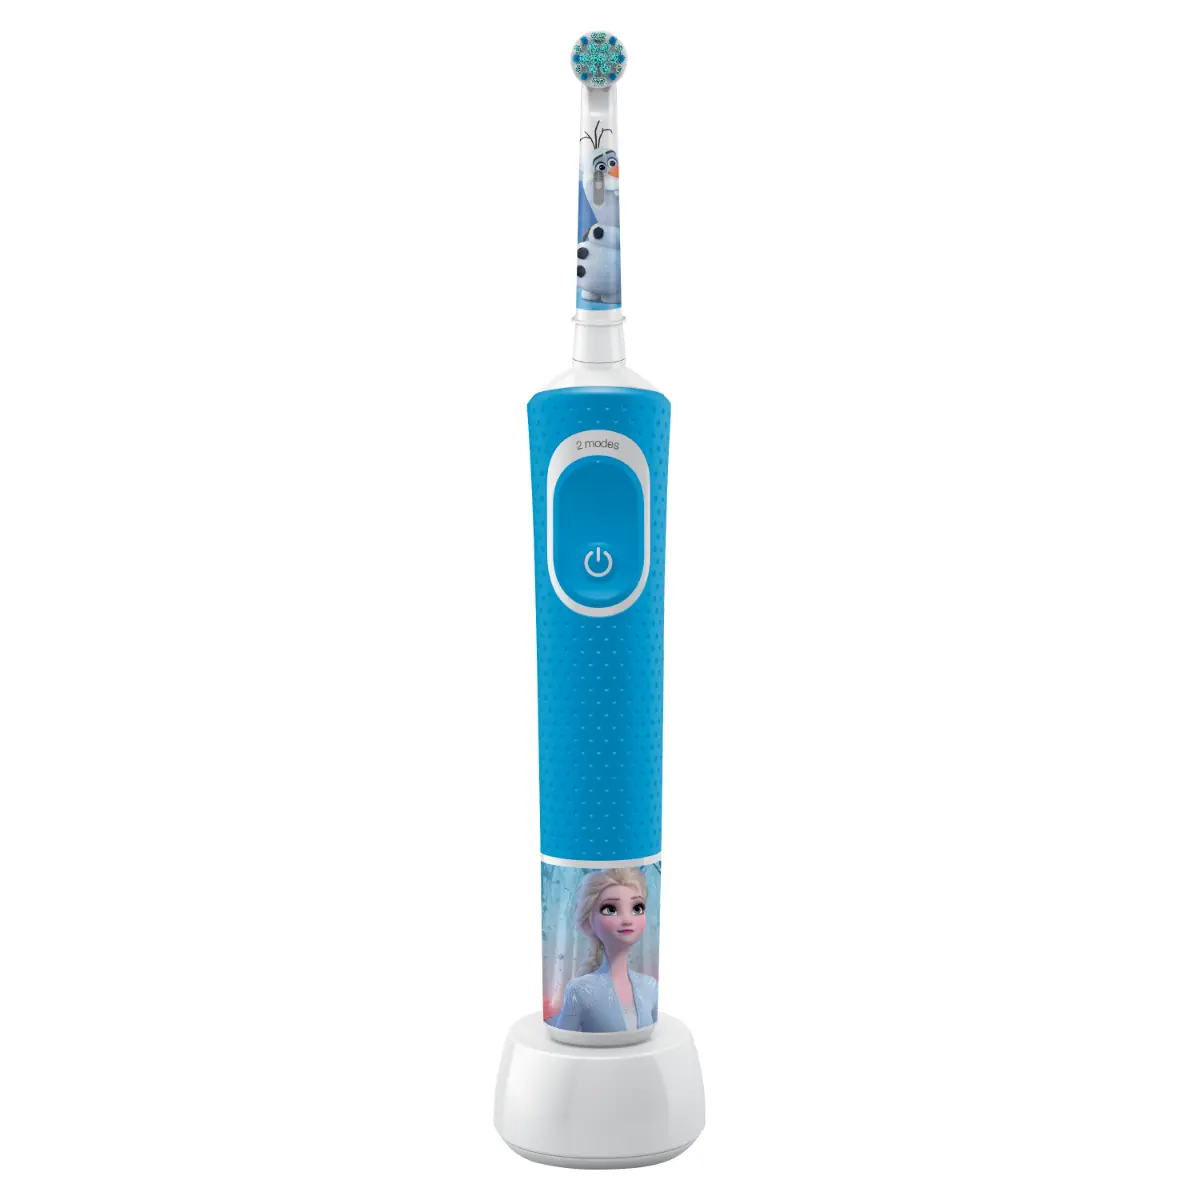 Periuta de dinti electrica Oral-B D100 Vitality Frozen pentru copii 7600 oscilatii/min, Curatare 2D, 2 programe, 1 capat, 4 stickere incluse, Albastru